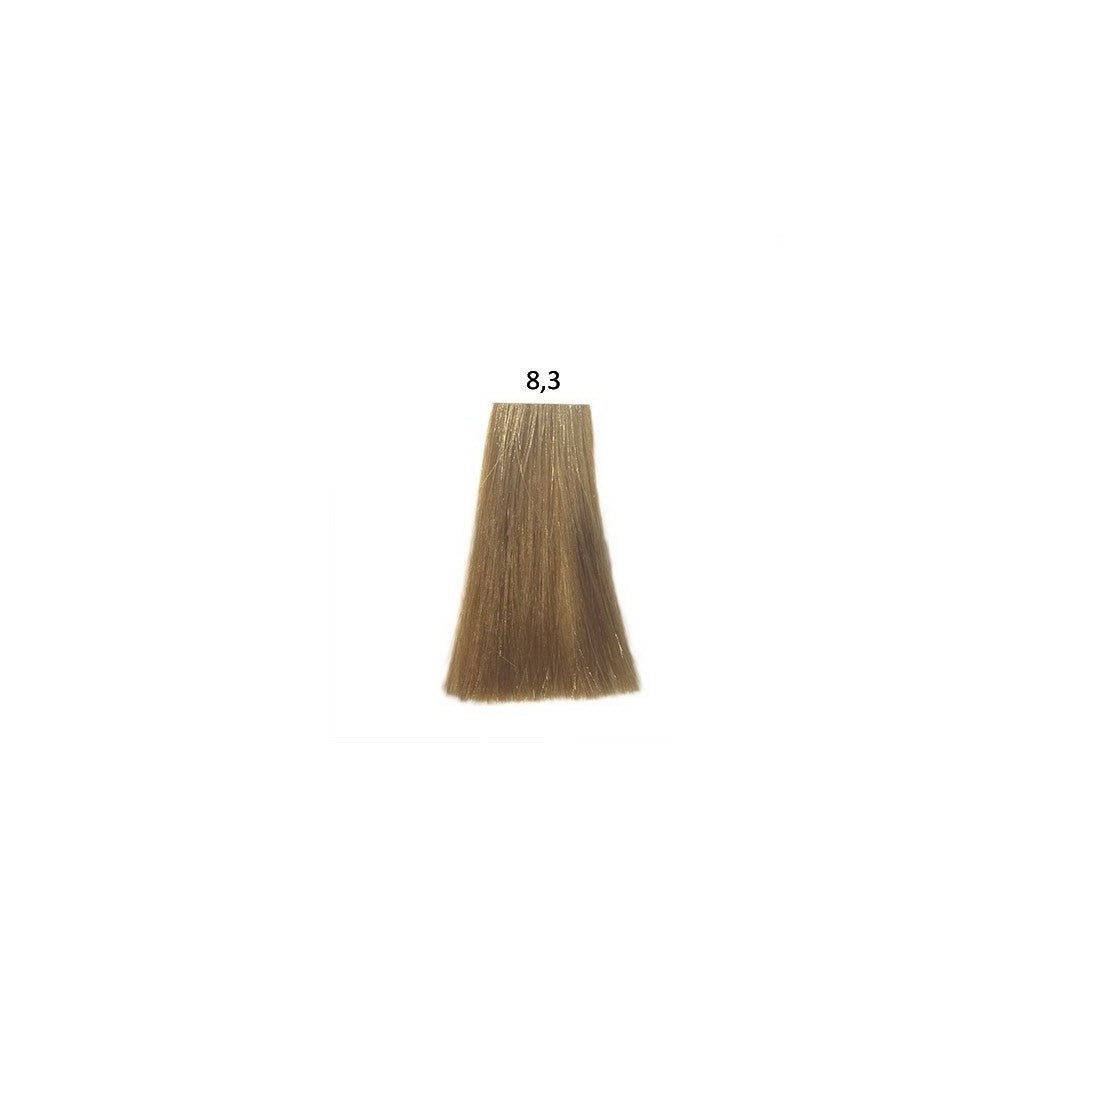 L'Oreal Professionnel Inoa 8.3 Light Blonde Gold 60ml